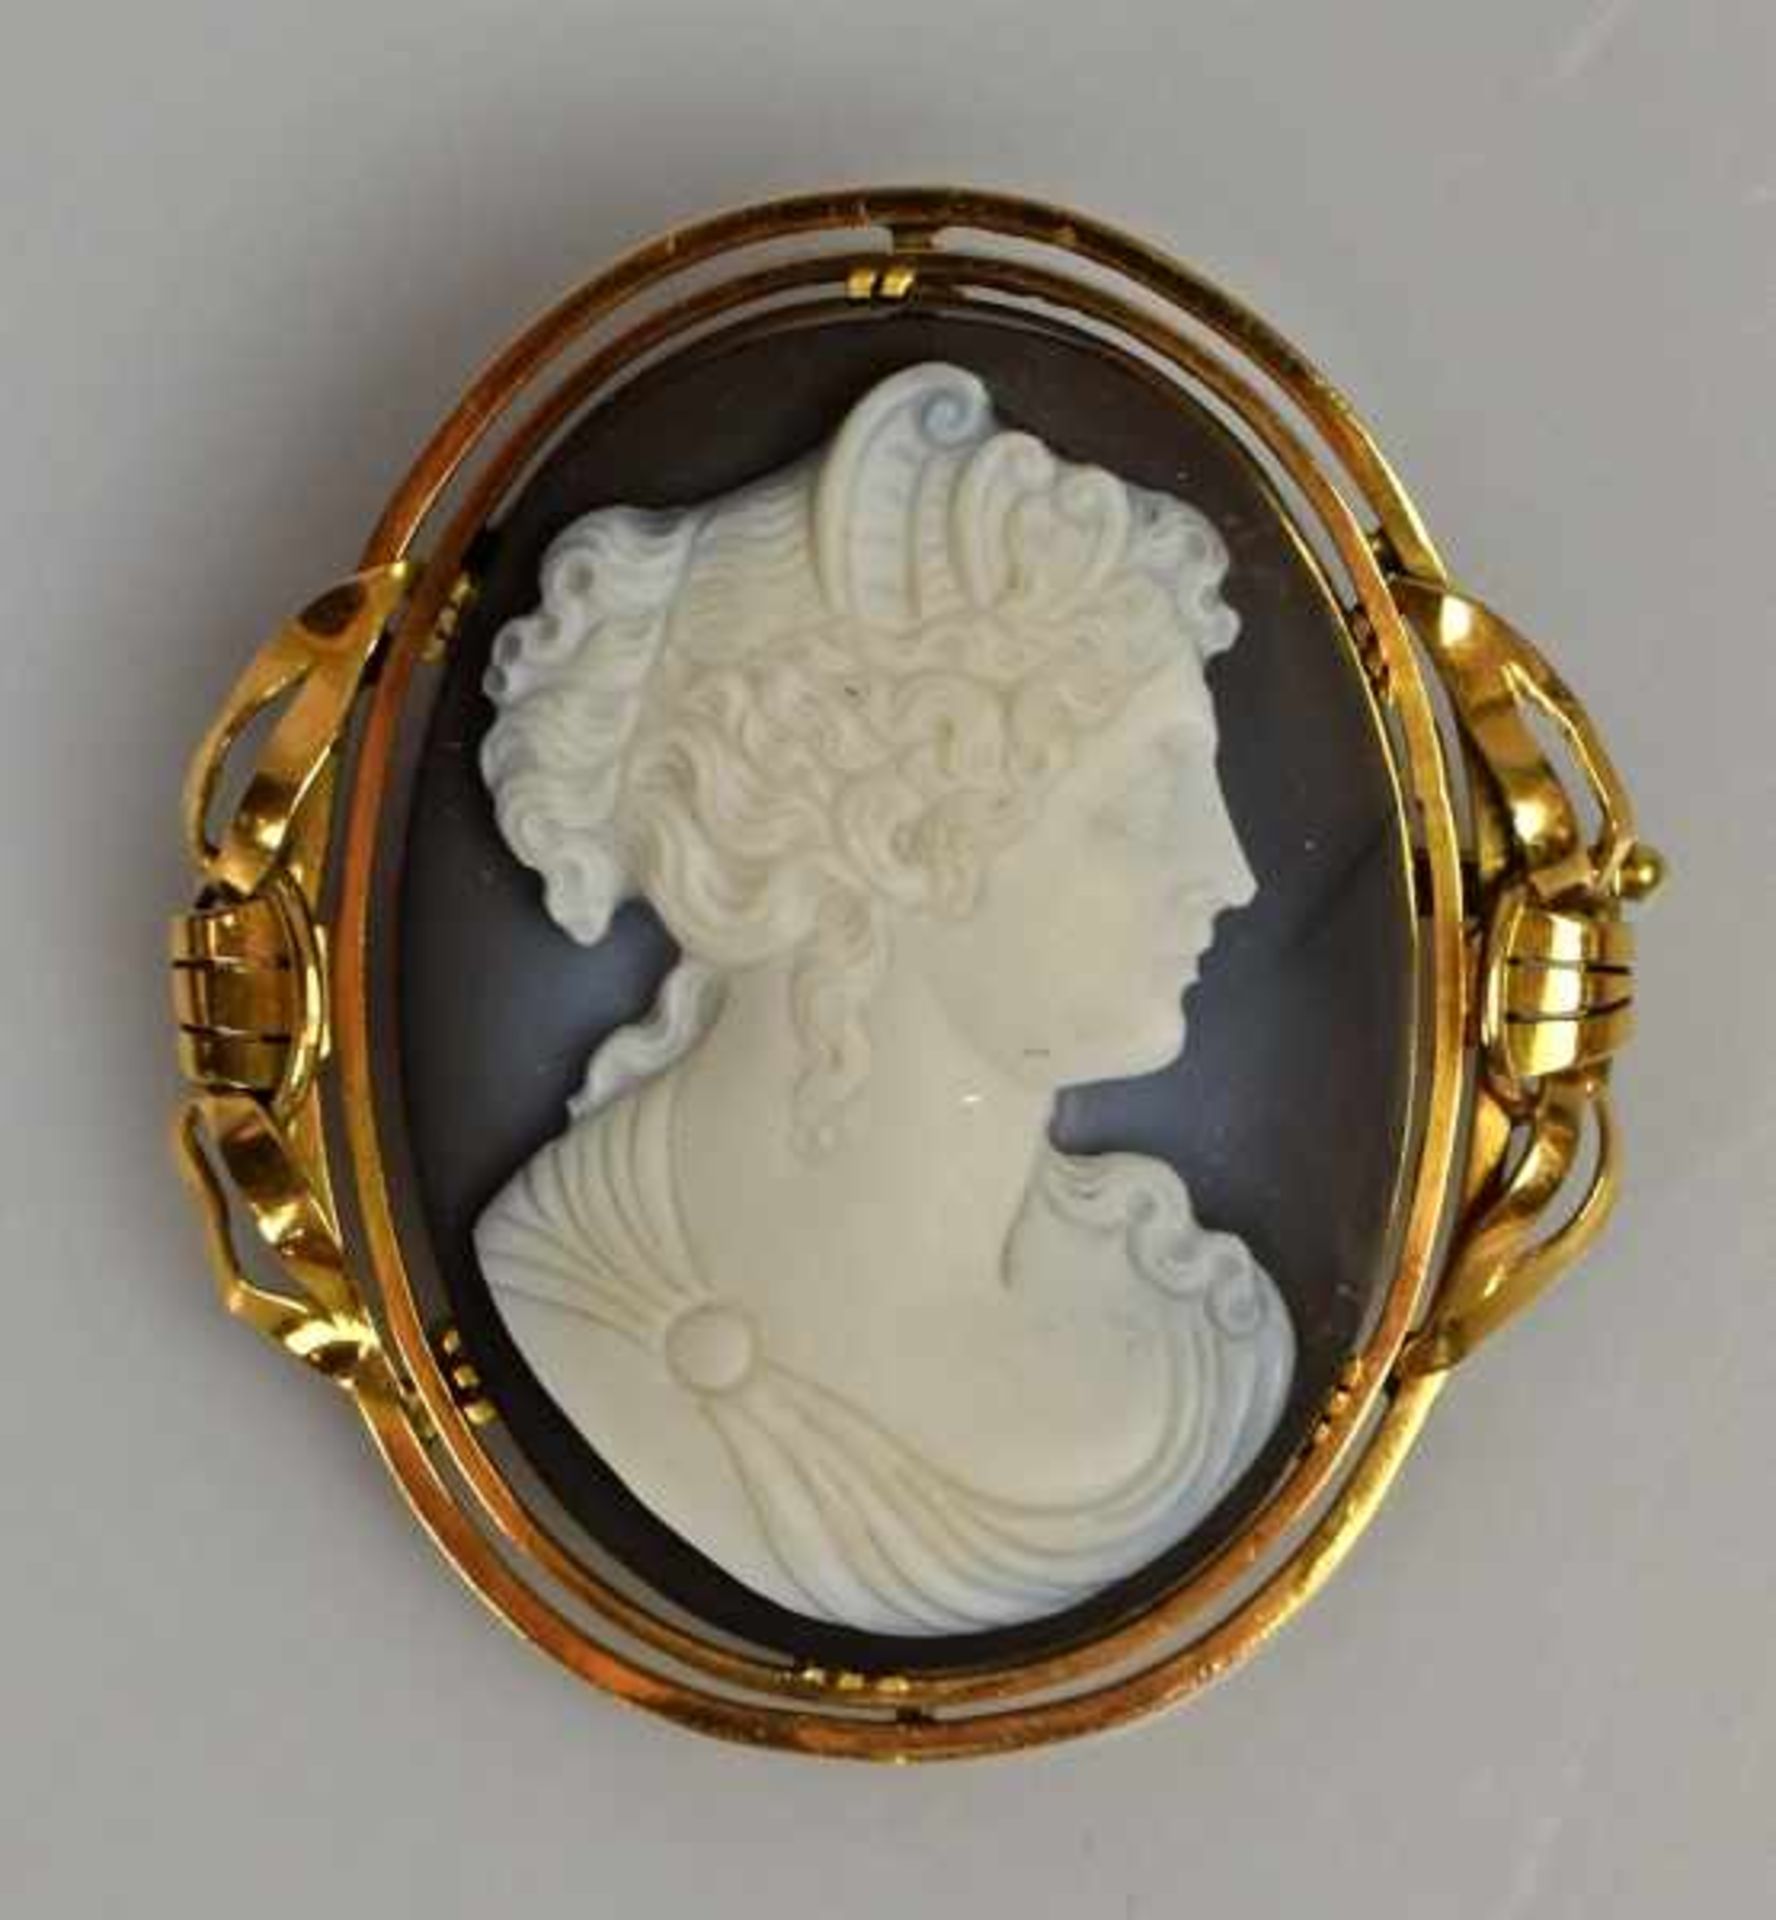 BROSCHE ovale Camée, "Frauenportrait" im Empirestil mit hochgesteckter Frisur, dunkler Lagenstein